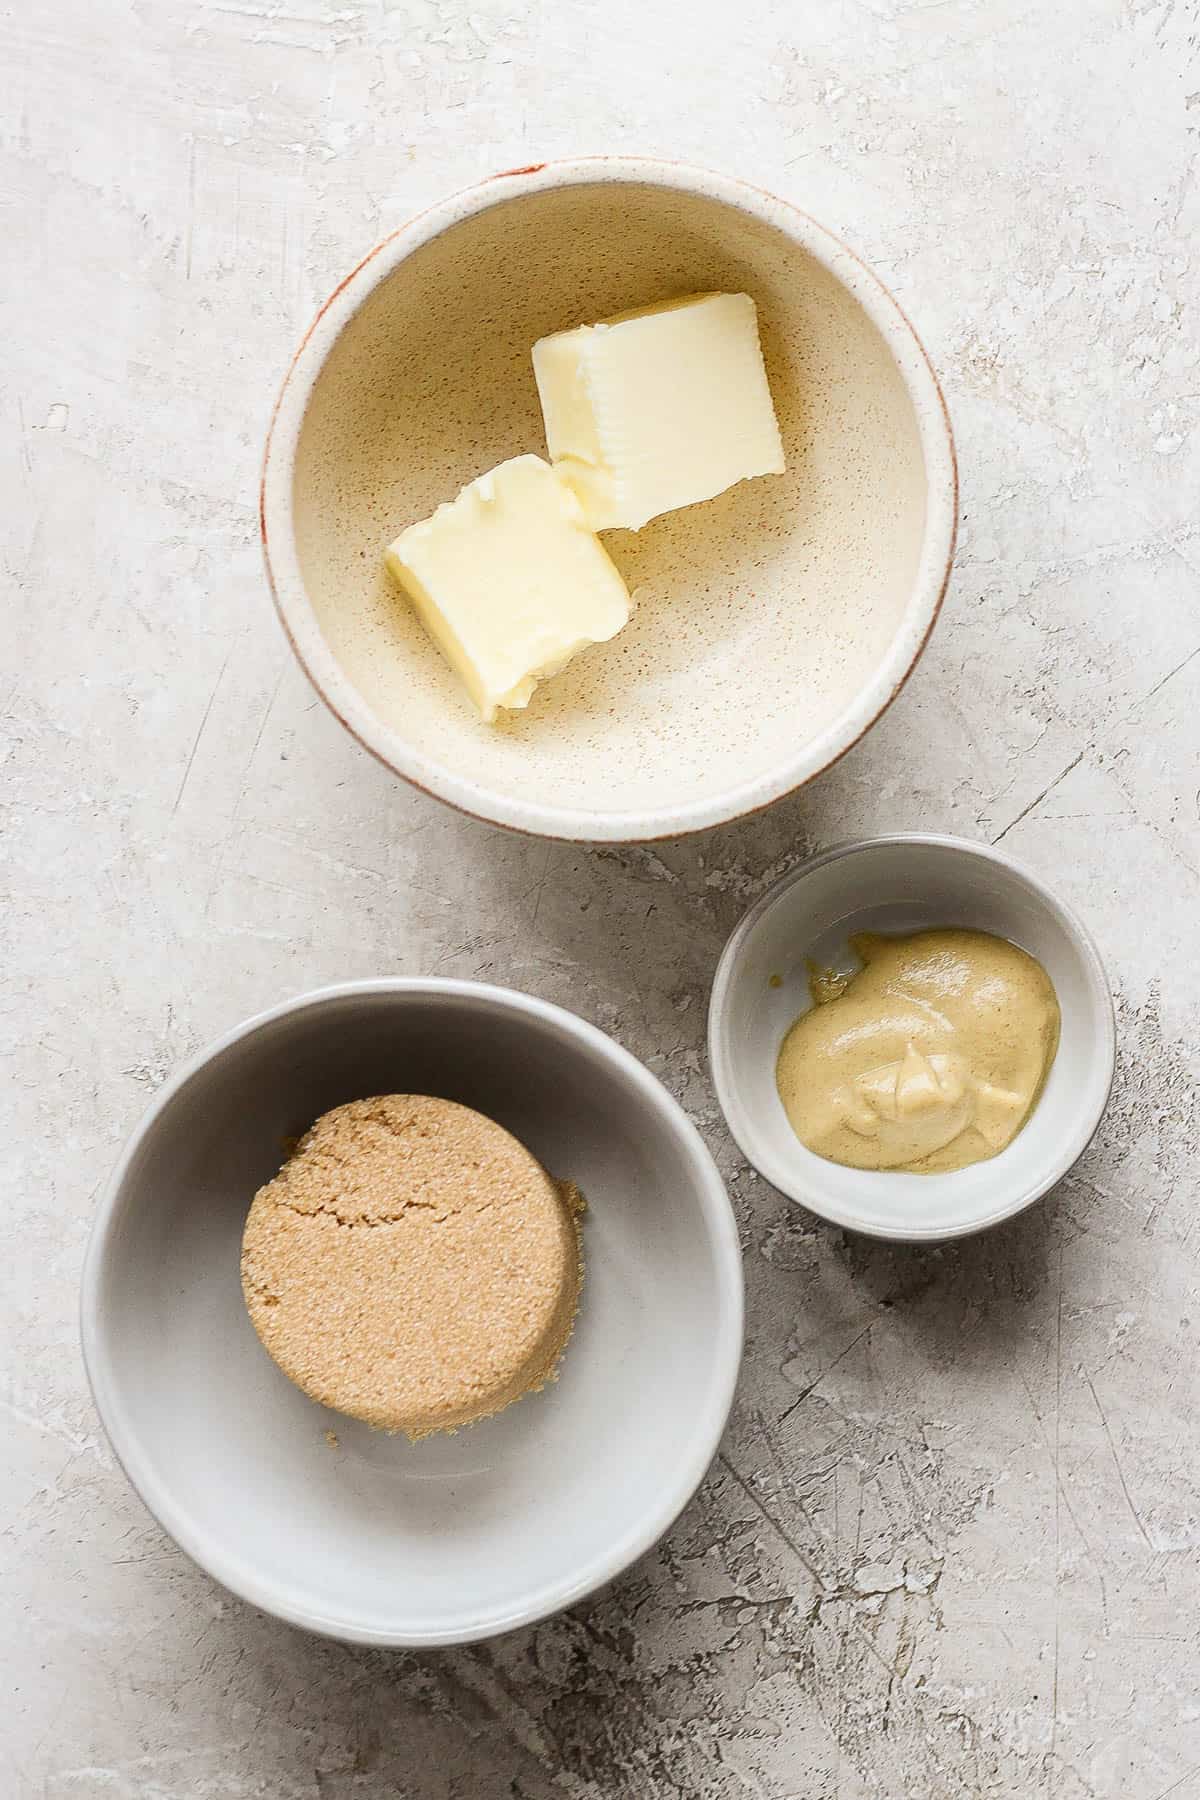 Individual bowls of butter, brown sugar, and dijon mustard.